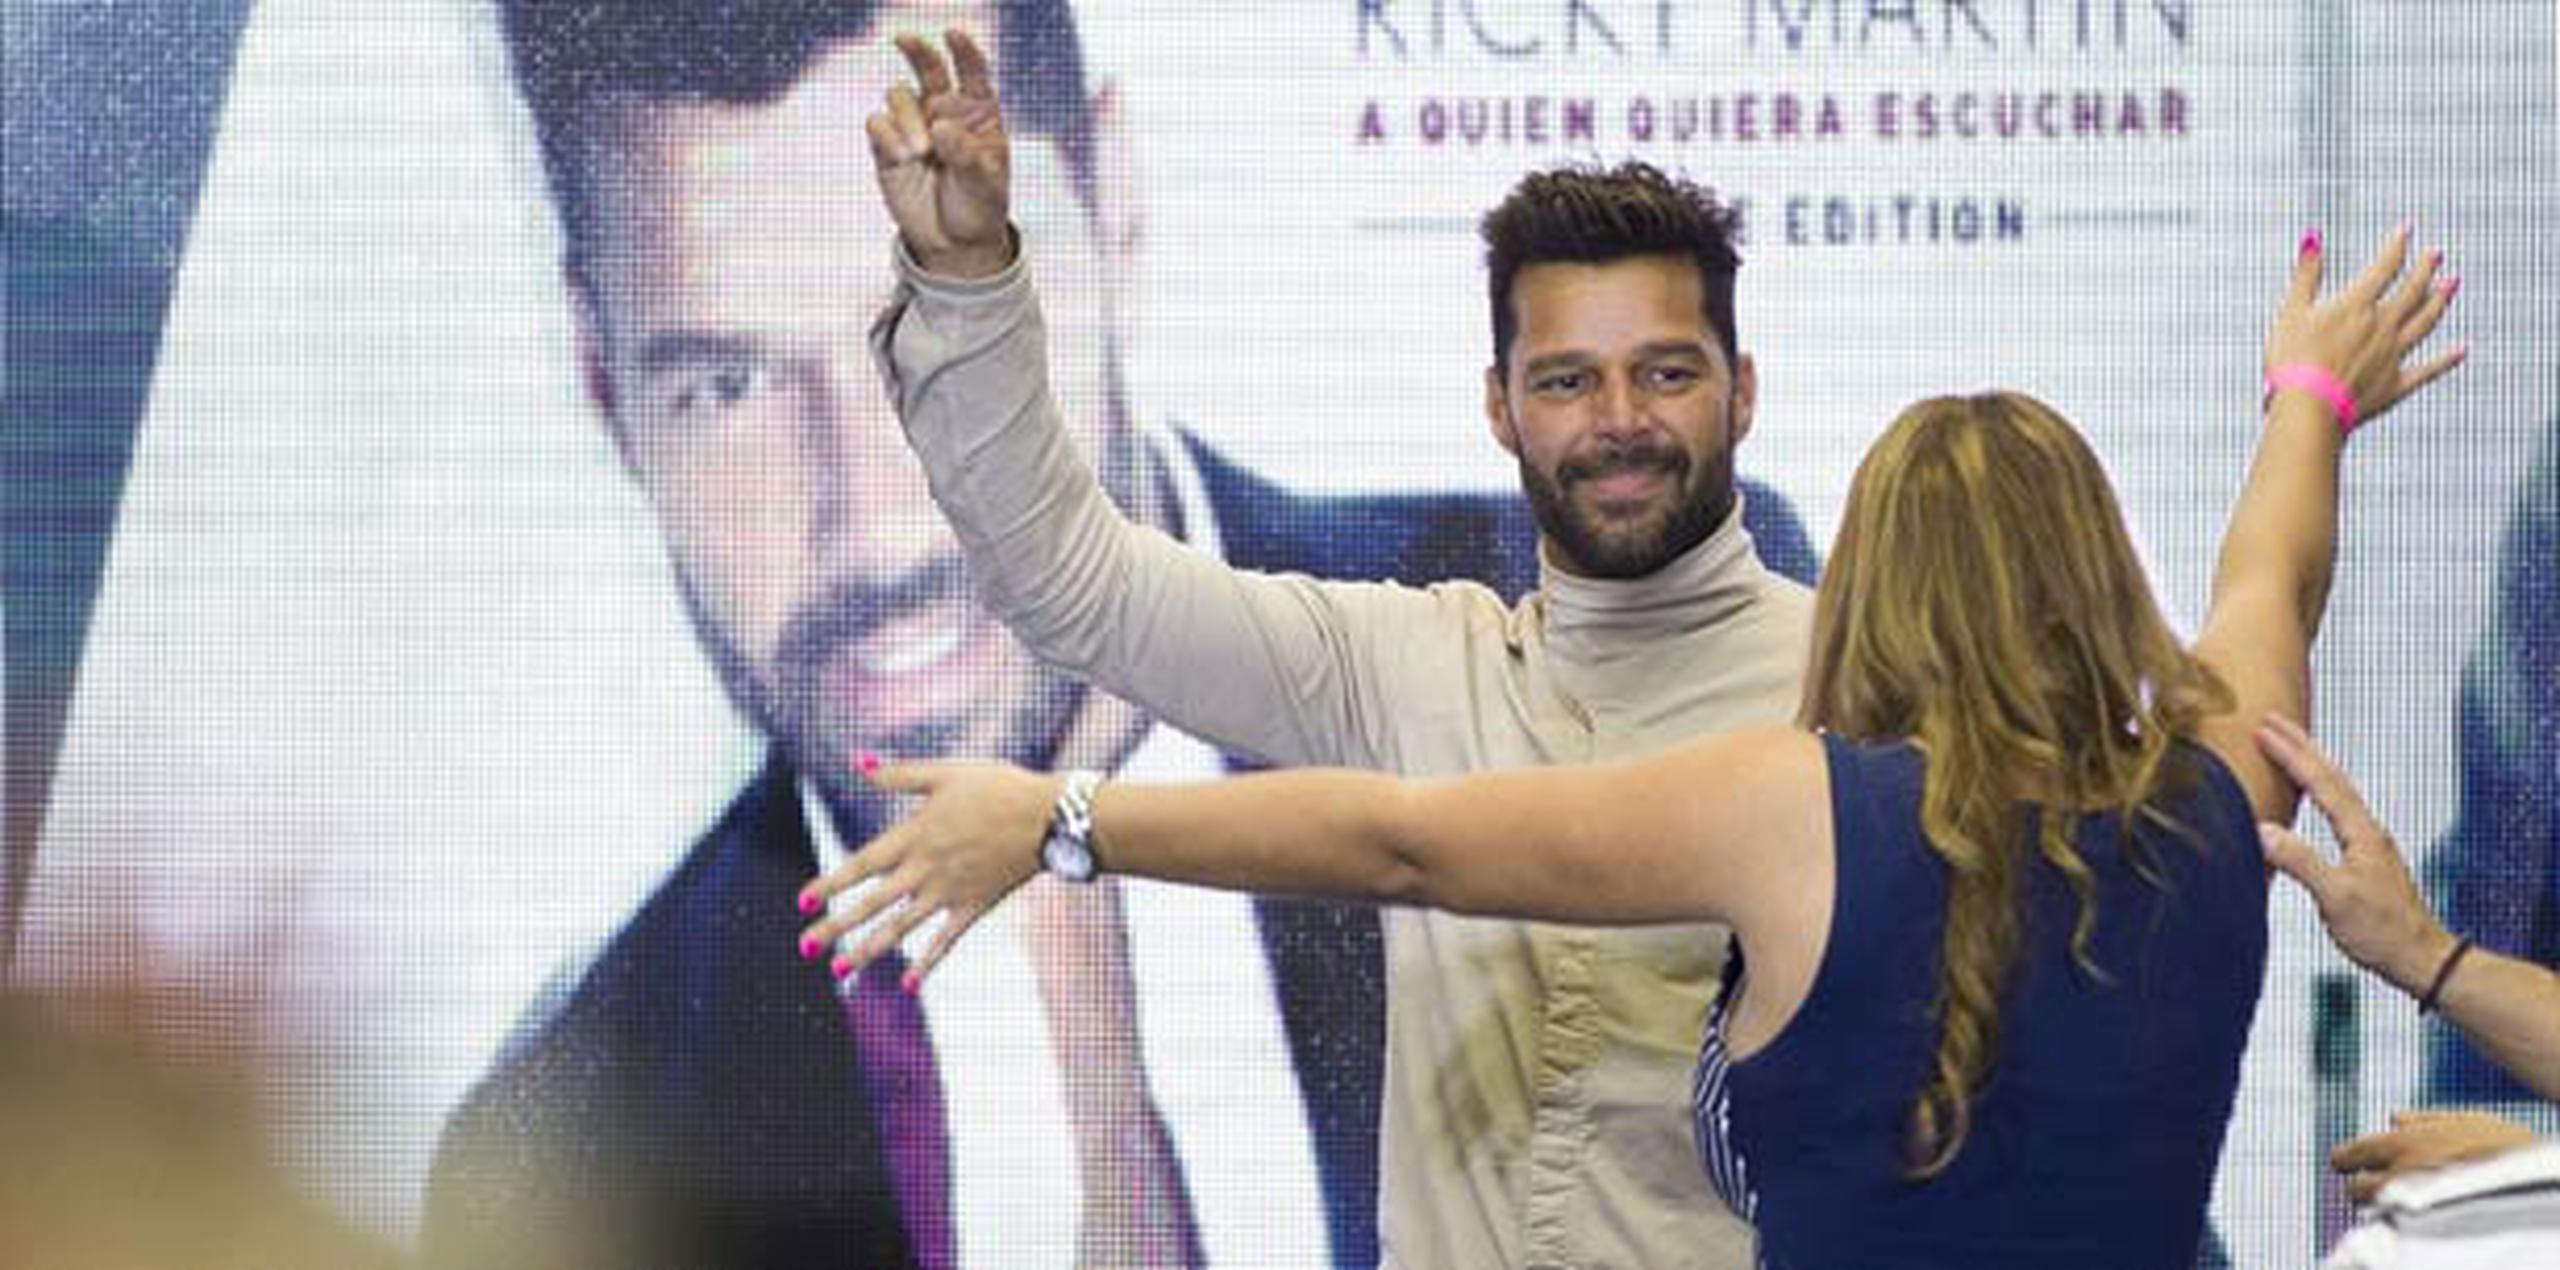 Los fanáticos de Ricky Martin pudieron fotografiarse con él, así como pedirle abrazos y autógrafos. (tonito.zayas@gfrmedia.com)